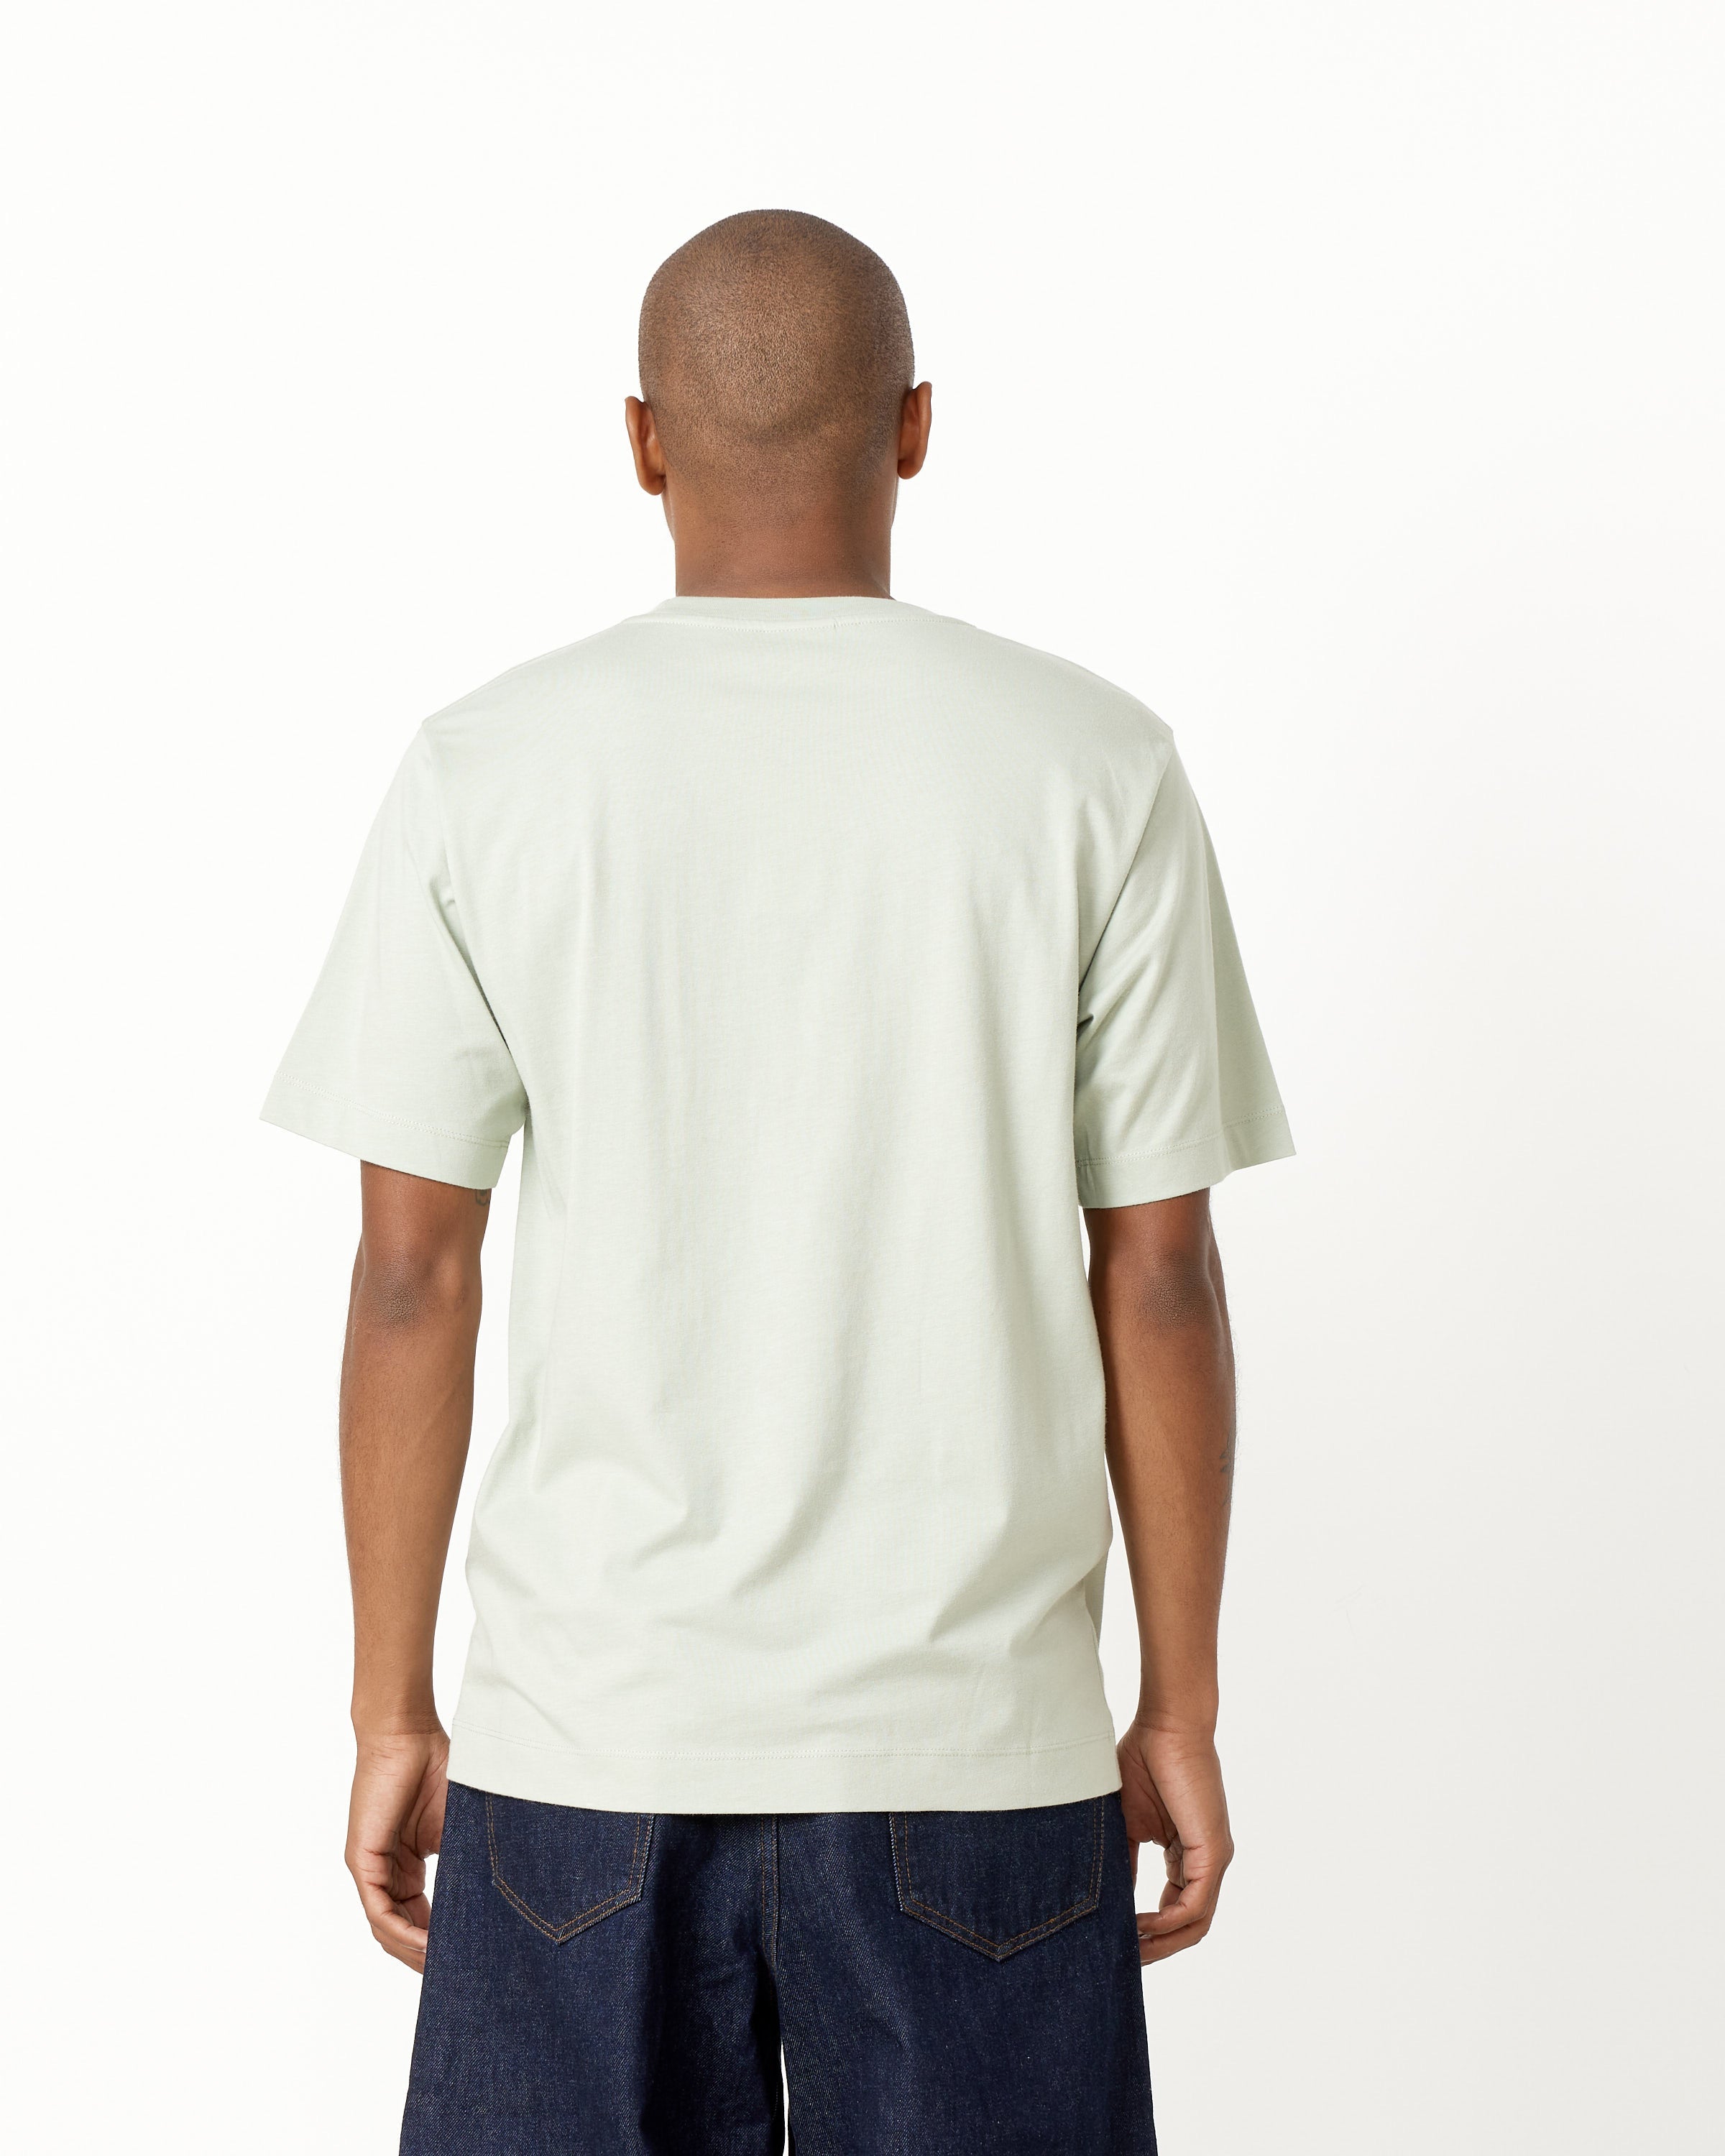 Hertz 7600 T-Shirt in Light Green